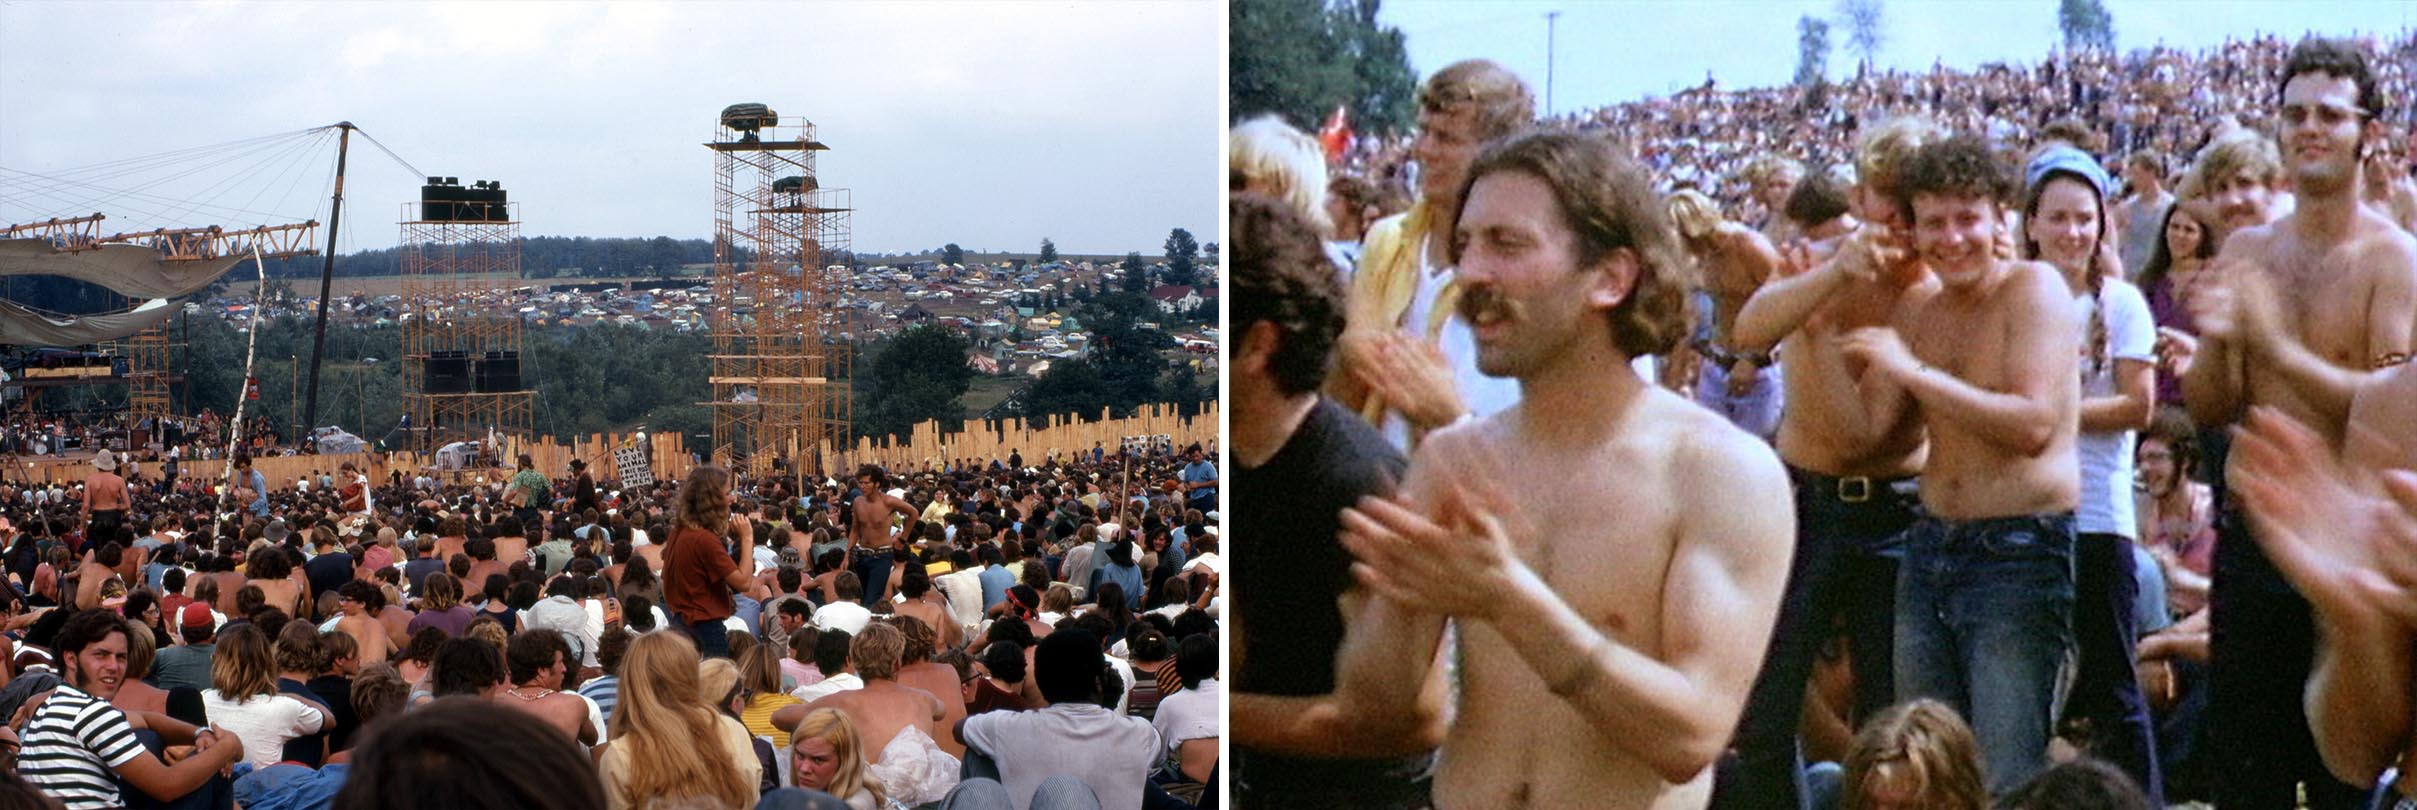 Woodstock: Geburt eines einzigartigen Musikgenres und Festivals